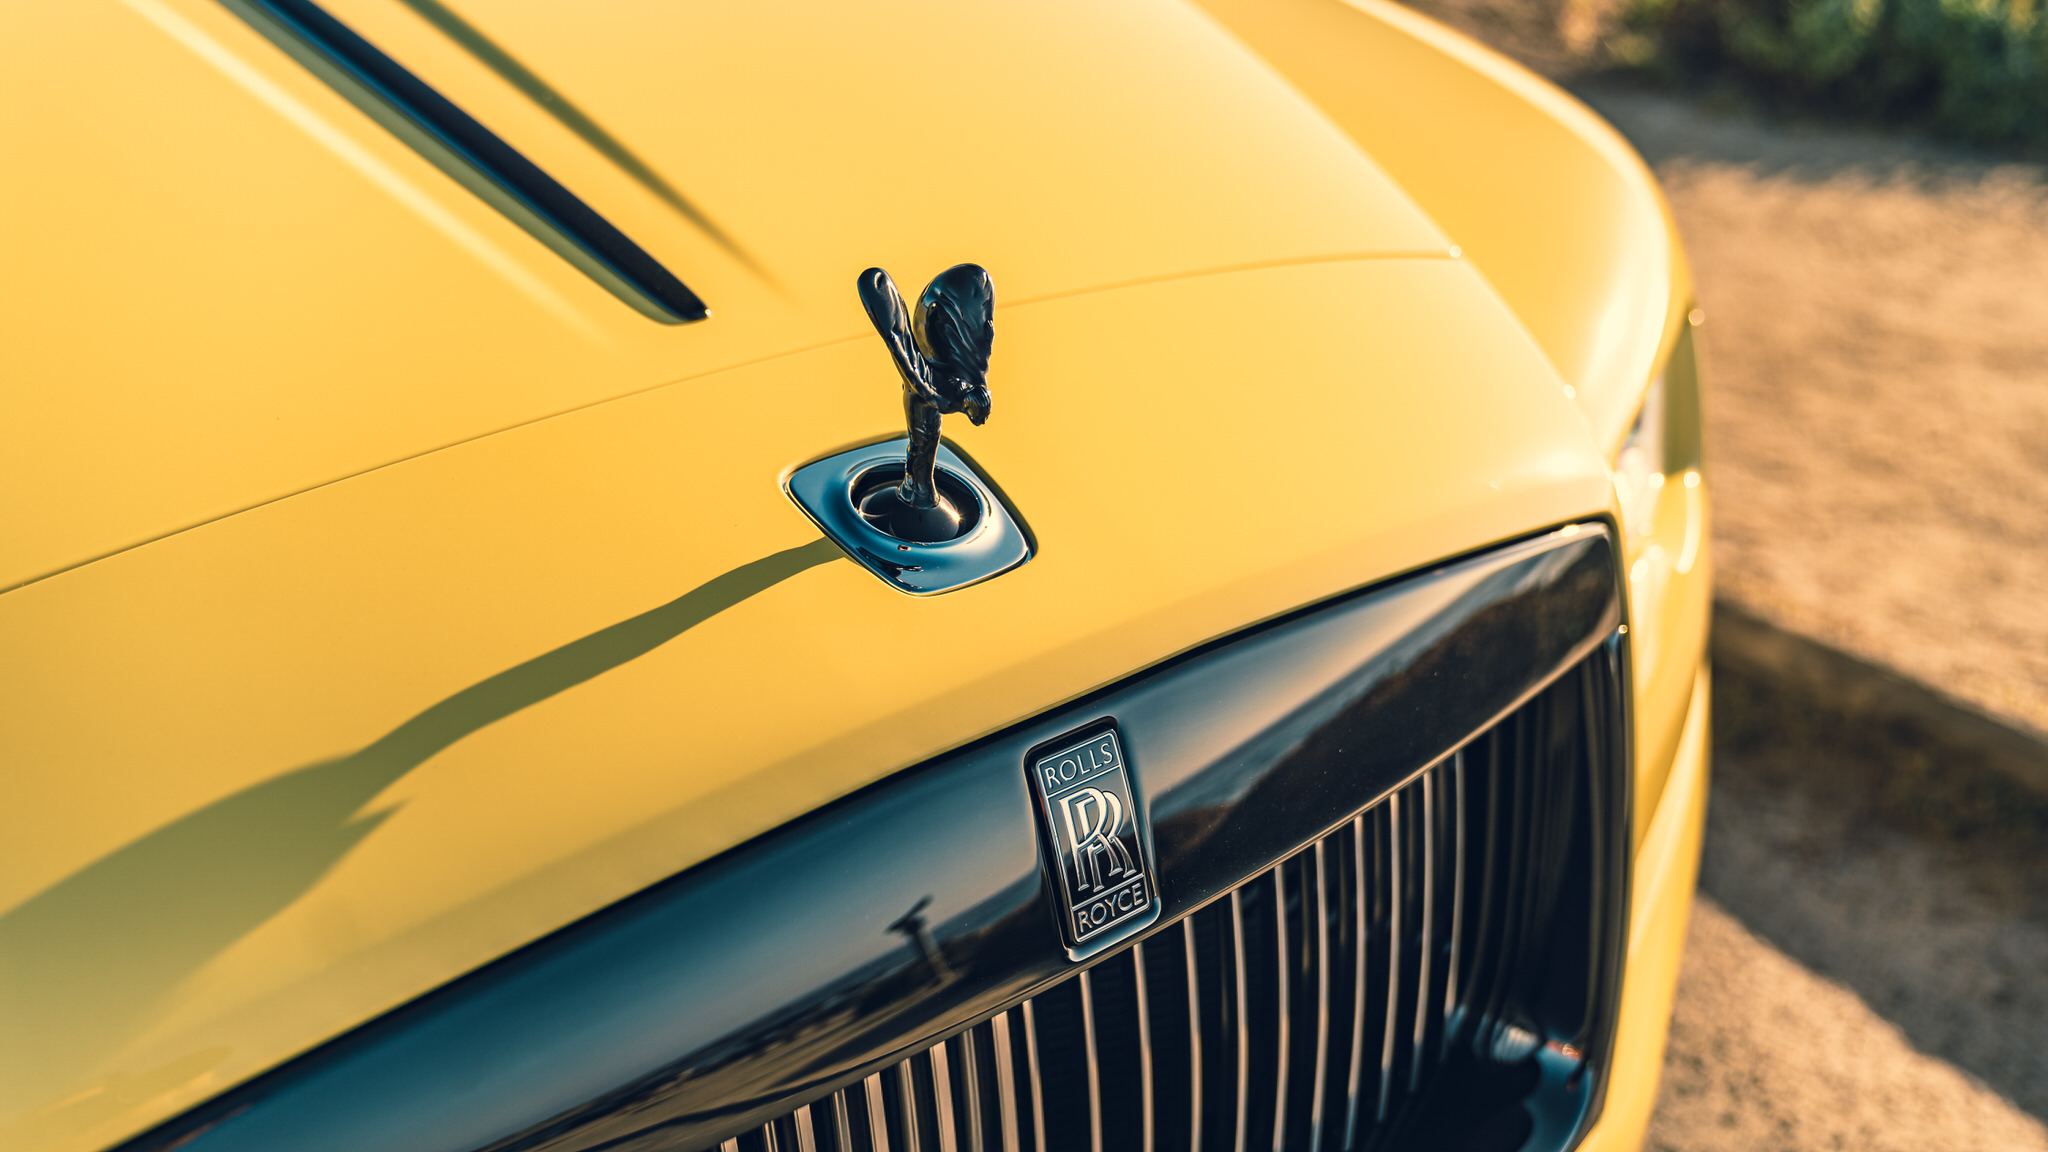 Rolls-Royce giới thiệu bộ sưu tập Ghost Zenith, chỉ có 50 chiếc và dàn xe màu Pastel cực độc chỉ 13 chiếc